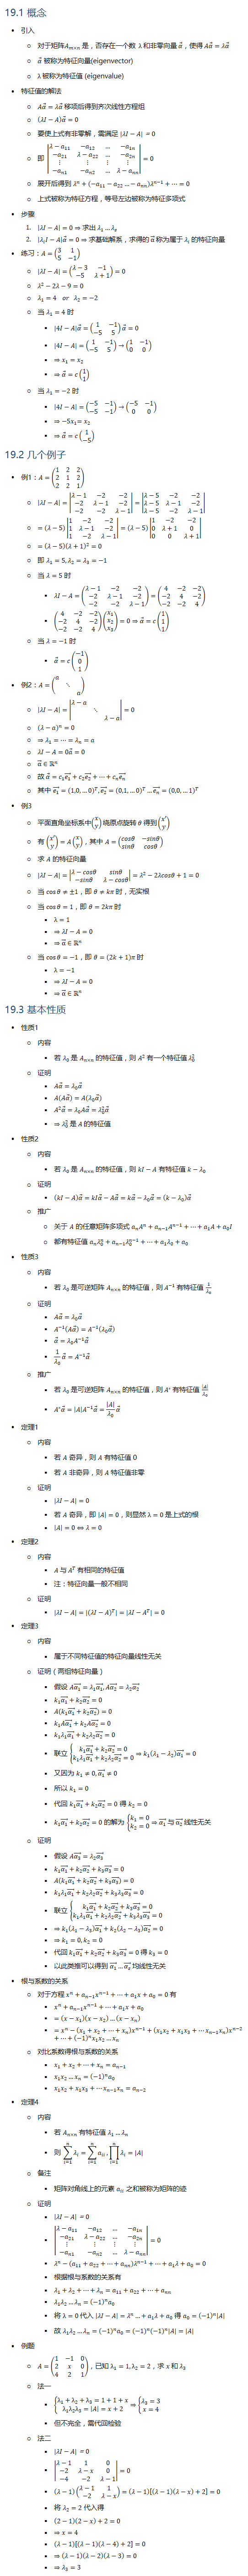 19.1 概念 • 引入 ○ 对于矩阵A_(m×n) 是，否存在一个数 λ 和非零向量 α ⃗，使得 Aα ⃗=λα ⃗ ○ α ⃗ 被称为特征向量(eigenvector) ○ λ 被称为特征值 (eigenvalue) • 特征值的解法 ○ Aα ⃗=λα ⃗ 移项后得到齐次线性方程组 ○ (λI−A) α ⃗=0 ○ 要使上式有非零解，需满足 |λI−A|=0 ○ 即 |■8(λ−a_11&−a_12&…&〖−a〗_1n@−a_21&〖λ−a〗_22&…&−a_2n@⋮&⋮&⋮&⋮@−a_n1&〖−a〗_n2&…&λ−a_nn )|=0 ○ 展开后得到 λ^n+(−a_11−a_22…−a_nn ) λ^(n−1)+…=0 ○ 上式被称为特征方程，等号左边被称为特征多项式 • 步骤 1. |λI−A|=0⇒求出 λ_1…λ_s 2. |λ_i I−A| α ⃗=0⇒求基础解系，求得的 α ⃗ 称为属于 λ_i 的特征向量 • 练习：A=(■8(3&1@5&−1)) ○ |λI−A|=(■8(λ−3&−1@−5&λ+1))=0 ○ λ^2−2λ−9=0 ○ λ_1=4 or λ_2=−2 ○ 当 λ_1=4 时 § |4I−A| α ⃗=(■8(1&−1@−5&5)) α ⃗=0 § |4I−A|=(■8(1&−1@−5&5))→(■8(1&−1@0&0)) § ⇒x_1=x_2 § ⇒α ⃗=c(■8(1@1)) ○ 当 λ_1=−2 时 § |4I−A|=(■8(−5&−1@−5&−1))→(■8(−5&−1@0&0)) § ⇒〖−5x〗_1=x_2 § ⇒α ⃗=c(■8(1@−5)) 19.2 几个例子 • 例1：A=(■8(1&2&2@2&1&2@2&2&1)) ○ |λI−A|=|■8(λ−1&−2&−2@−2&λ−1&−2@−2&−2&λ−1)|=|■8(λ−5&−2&−2@λ−5&λ−1&−2@λ−5&−2&λ−1)| ○ =(λ−5)|■8(1&−2&−2@1&λ−1&−2@1&−2&λ−1)|=(λ−5)|■8(1&−2&−2@0&λ+1&0@0&0&λ+1)| ○ =(λ−5) (λ+1)^2=0 ○ 即 λ_1=5,λ_2=λ_3=−1 ○ 当 λ=5 时 § λI−A=(■8(λ−1&−2&−2@−2&λ−1&−2@−2&−2&λ−1))=(■8(4&−2&−2@−2&4&−2@−2&−2&4)) § (■8(4&−2&−2@−2&4&−2@−2&−2&4))(■8(x_1@x_2@x_3 ))=0⇒α ⃗=c(■8(1@1@1)) ○ 当 λ=−1 时 § α ⃗=c(■8(−1@0@1)) • 例2：A=(■(a&&@&⋱&@&&a)) ○ |λI−A|=|■(λ−a&&@&⋱&@&&λ−a)|=0 ○ (λ−a)^n=0 ○ ⇒λ_1=…=λ_n=a ○ λI−A=0a ⃗=0 ○ α ⃗∈Rn ○ 故 α ⃗=c_1 (e_1 ) ⃗+c_2 (e_2 ) ⃗+…+c_n (e_n ) ⃗ ○ 其中 (e_1 ) ⃗=(1,0,…0)^T, (e_2 ) ⃗=(0,1,…0)^T…(e_n ) ⃗=(0,0,…1)^T • 例3 ○ 平面直角坐标系中(■8(x@y))绕原点旋转 θ 得到(■8(x′@y)) ○ 有 (■8(x′@y))=A(■8(x@y))，其中 A=(■8(cosθ&−sinθ@sinθ&cosθ)) ○ 求 A 的特征向量 ○ |λI−A|=|■8(λ−cosθ&sinθ@−sinθ&λ−cosθ)|=λ^2−2λcosθ+1=0 ○ 当 cos⁡θ≠±1，即 θ≠kπ 时，无实根 ○ 当 cos⁡θ=1，即 θ=2kπ 时 § λ=1 § ⇒λI−A=0 § ⇒α ⃗∈Rn ○ 当 cos⁡θ=−1，即 θ=(2k+1)π 时 § λ=−1 § ⇒λI−A=0 § ⇒α ⃗∈Rn 19.3 基本性质 • 性质1 ○ 内容 § 若 λ_0 是 A_(n×n) 的特征值，则 A^2 有一个特征值 λ_0^2 ○ 证明 § Aα ⃗=λ_0 α ⃗ § A(Aα ⃗)=A(λ_0 α ⃗) § A^2 α ⃗=λ_0 Aα ⃗=λ_0^2 α ⃗ § ⇒λ_0^2 是 A 的特征值 • 性质2 ○ 内容 § 若 λ_0 是 A_(n×n) 的特征值，则 kI−A 有特征值 k−λ_0 ○ 证明 § (kI−A) α ⃗=kIα ⃗−Aα ⃗=kα ⃗−λ_0 α ⃗=(k−λ_0 ) α ⃗ ○ 推广 ○ 关于 A 的任意矩阵多项式 a_n A^n+a_(n−1) A^(n−1)+…+a_1 A+a_0 I ○ 都有特征值 a_n λ_0^n+a_(n−1) λ_0^(n−1)+…+a_1 λ_0+a_0 • 性质3 ○ 内容 § 若 λ_0 是可逆矩阵 A_(n×n) 的特征值，则 A^(−1) 有特征值 1/λ_0 ○ 证明 § Aα ⃗=λ_0 α ⃗ § A^(−1) (Aα ⃗ )=A^(−1) (λ_0 α ⃗ ) § α ⃗=λ_0 A^(−1) α ⃗ § 1/λ_0 α ⃗=A^(−1) α ⃗ ○ 推广 § 若 λ_0 是可逆矩阵 A_(n×n) 的特征值，则 A^∗ 有特征值 |A|/λ_0 § A^∗ α ⃗=|A| A^(−1) α ⃗=|A|/λ_0 α ⃗ • 定理1 ○ 内容 § 若 A 奇异，则 A 有特征值 0 § 若 A 非奇异，则 A 特征值非零 ○ 证明 § |λI−A|=0 § 若 A 奇异，即 |A|=0，则显然 λ=0 是上式的根 § |A|=0⇔λ=0 • 定理2 ○ 内容 § A 与 A^T 有相同的特征值 § 注：特征向量一般不相同 ○ 证明 § |λI−A|=|(λI−A)^T |=|λI−A^T |=0 • 定理3 ○ 内容 § 属于不同特征值的特征向量线性无关 ○ 证明（两组特征向量） § 假设 A(α_1 ) ⃗=λ_1 (α_1 ) ⃗, A(α_2 ) ⃗=λ_2 (α_2 ) ⃗ § k_1 (α_1 ) ⃗+k_2 (α_2 ) ⃗=0 § A(k_1 (α_1 ) ⃗+k_2 (α_2 ) ⃗ )=0 § k_1 A(α_1 ) ⃗+k_2 A(α_2 ) ⃗=0 § k_1 λ_1 (α_1 ) ⃗+k_2 λ_2 (α_2 ) ⃗=0 § 联立 {█(k_1 (α_1 ) ⃗+k_2 (α_2 ) ⃗=0@k_1 λ_1 (α_1 ) ⃗+k_2 λ_2 (α_2 ) ⃗=0)┤⇒k_1 (λ_1−λ_2 ) (α_1 ) ⃗=0 § 又因为 k_1≠0, (α_1 ) ⃗≠0 § 所以 k_1=0 § 代回 k_1 (α_1 ) ⃗+k_2 (α_2 ) ⃗=0 得 k_2=0 § k_1 (α_1 ) ⃗+k_2 (α_2 ) ⃗=0 的解为 {█(k_1=0@k_2=0)┤⇒(α_1 ) ⃗ 与 (α_2 ) ⃗ 线性无关 ○ 证明 § 假设 A(α_3 ) ⃗=λ_2 (α_3 ) ⃗ § k_1 (α_1 ) ⃗+k_2 (α_2 ) ⃗+k_3 (α_3 ) ⃗=0 § A(k_1 (α_1 ) ⃗+k_2 (α_2 ) ⃗+k_3 (α_3 ) ⃗ )=0 § k_1 λ_1 (α_1 ) ⃗+k_2 λ_2 (α_2 ) ⃗+k_3 λ_3 (α_3 ) ⃗=0 § 联立 {█(k_1 (α_1 ) ⃗+k_2 (α_2 ) ⃗+k_3 (α_3 ) ⃗=0@k_1 λ_1 (α_1 ) ⃗+k_2 λ_2 (α_2 ) ⃗+k_3 λ_3 (α_3 ) ⃗=0)┤ § ⇒k_1 (λ_1−λ_3 ) (α_1 ) ⃗+k_2 (λ_2−λ_3 ) (α_2 ) ⃗=0 § ⇒k_1=0, k_2=0 § 代回 k_1 (α_1 ) ⃗+k_2 (α_2 ) ⃗+k_3 (α_3 ) ⃗=0 得 k_3=0 § 以此类推可以得到 (α_1 ) ⃗…(α_s ) ⃗ 均线性无关 • 根与系数的关系 ○ 对于方程 x^n+a_(n−1) x^(n−1)+…+a_1 x+a_0=0 有 § x^n+a_(n−1) x^(n−1)+…+a_1 x+a_0 § =(x−x_1 )(x−x_2 )…(x−x_n ) § =x^n−(x_1+x_2+…+x_n ) x^(n−1)+(x_1 x_2+x_1 x_3+…x_(n−1) x_n ) x^(n−2)+…+(−1)^n x_1 x_2…x_n ○ 对比系数得根与系数的关系 § x_1+x_2+…+x_n=a_(n−1) § x_1 x_2…x_n=(−1)^n a_0 § x_1 x_2+x_1 x_3+…x_(n−1) x_n=a_(n−2) • 定理4 ○ 内容 § 若 A_(n×n) 有特征值 λ_1…λ_n § 则 ∑_(i=1)^n▒λ_i =∑_(i=1)^n▒a_ii , ∏_(i=1)^n▒λ_i =|A| ○ 备注 § 矩阵对角线上的元素 a_ii 之和被称为矩阵的迹 ○ 证明 § |λI−A|=0 § |■8(λ−a_11&−a_12&…&〖−a〗_1n@−a_21&〖λ−a〗_22&…&−a_2n@⋮&⋮&⋮&⋮@−a_n1&〖−a〗_n2&…&λ−a_nn )|=0 § λ^n−(a_11+a_22+…+a_nn ) λ^(n−1)+…+a_1 λ+a_0=0 § 根据根与系数的关系有 § λ_1+λ_2+…+λ_n=a_11+a_22+…+a_nn § λ_1 λ_2…λ_n=(−1)^n a_0 § 将 λ=0 代入 |λI−A|=λ^n…+a_1 λ+a_0 得 a_0=(−1)^n |A| § 故 λ_1 λ_2…λ_n=(−1)^n a_0=(−1)^n (−1)^n |A|=|A| • 例题 ○ A=(■8(1&−1&0@2&x&0@4&2&1))，已知 λ_1=1,λ_2=2，求 x 和 λ_3 ○ 法一 § {█(λ_1+λ_2+λ_3=1+1+x@λ_1 λ_2 λ_3=|A|=x+2)┤⇒{█(λ_3=3@x=4)┤ § 但不完全，需代回检验 ○ 法二 § |λI−A|=0 § |■8(λ−1&1&0@−2&λ−x&0@−4&−2&λ−1)|=0 § (λ−1)(■8(λ−1&1@−2&λ−x))=(λ−1)[(λ−1)(λ−x)+2]=0 § 将 λ_2=2 代入得 § (2−1)(2−x)+2=0 § ⇒x=4 § (λ−1)[(λ−1)(λ−4)+2]=0 § ⇒(λ−1)(λ−2)(λ−3)=0 § ⇒λ_3=3